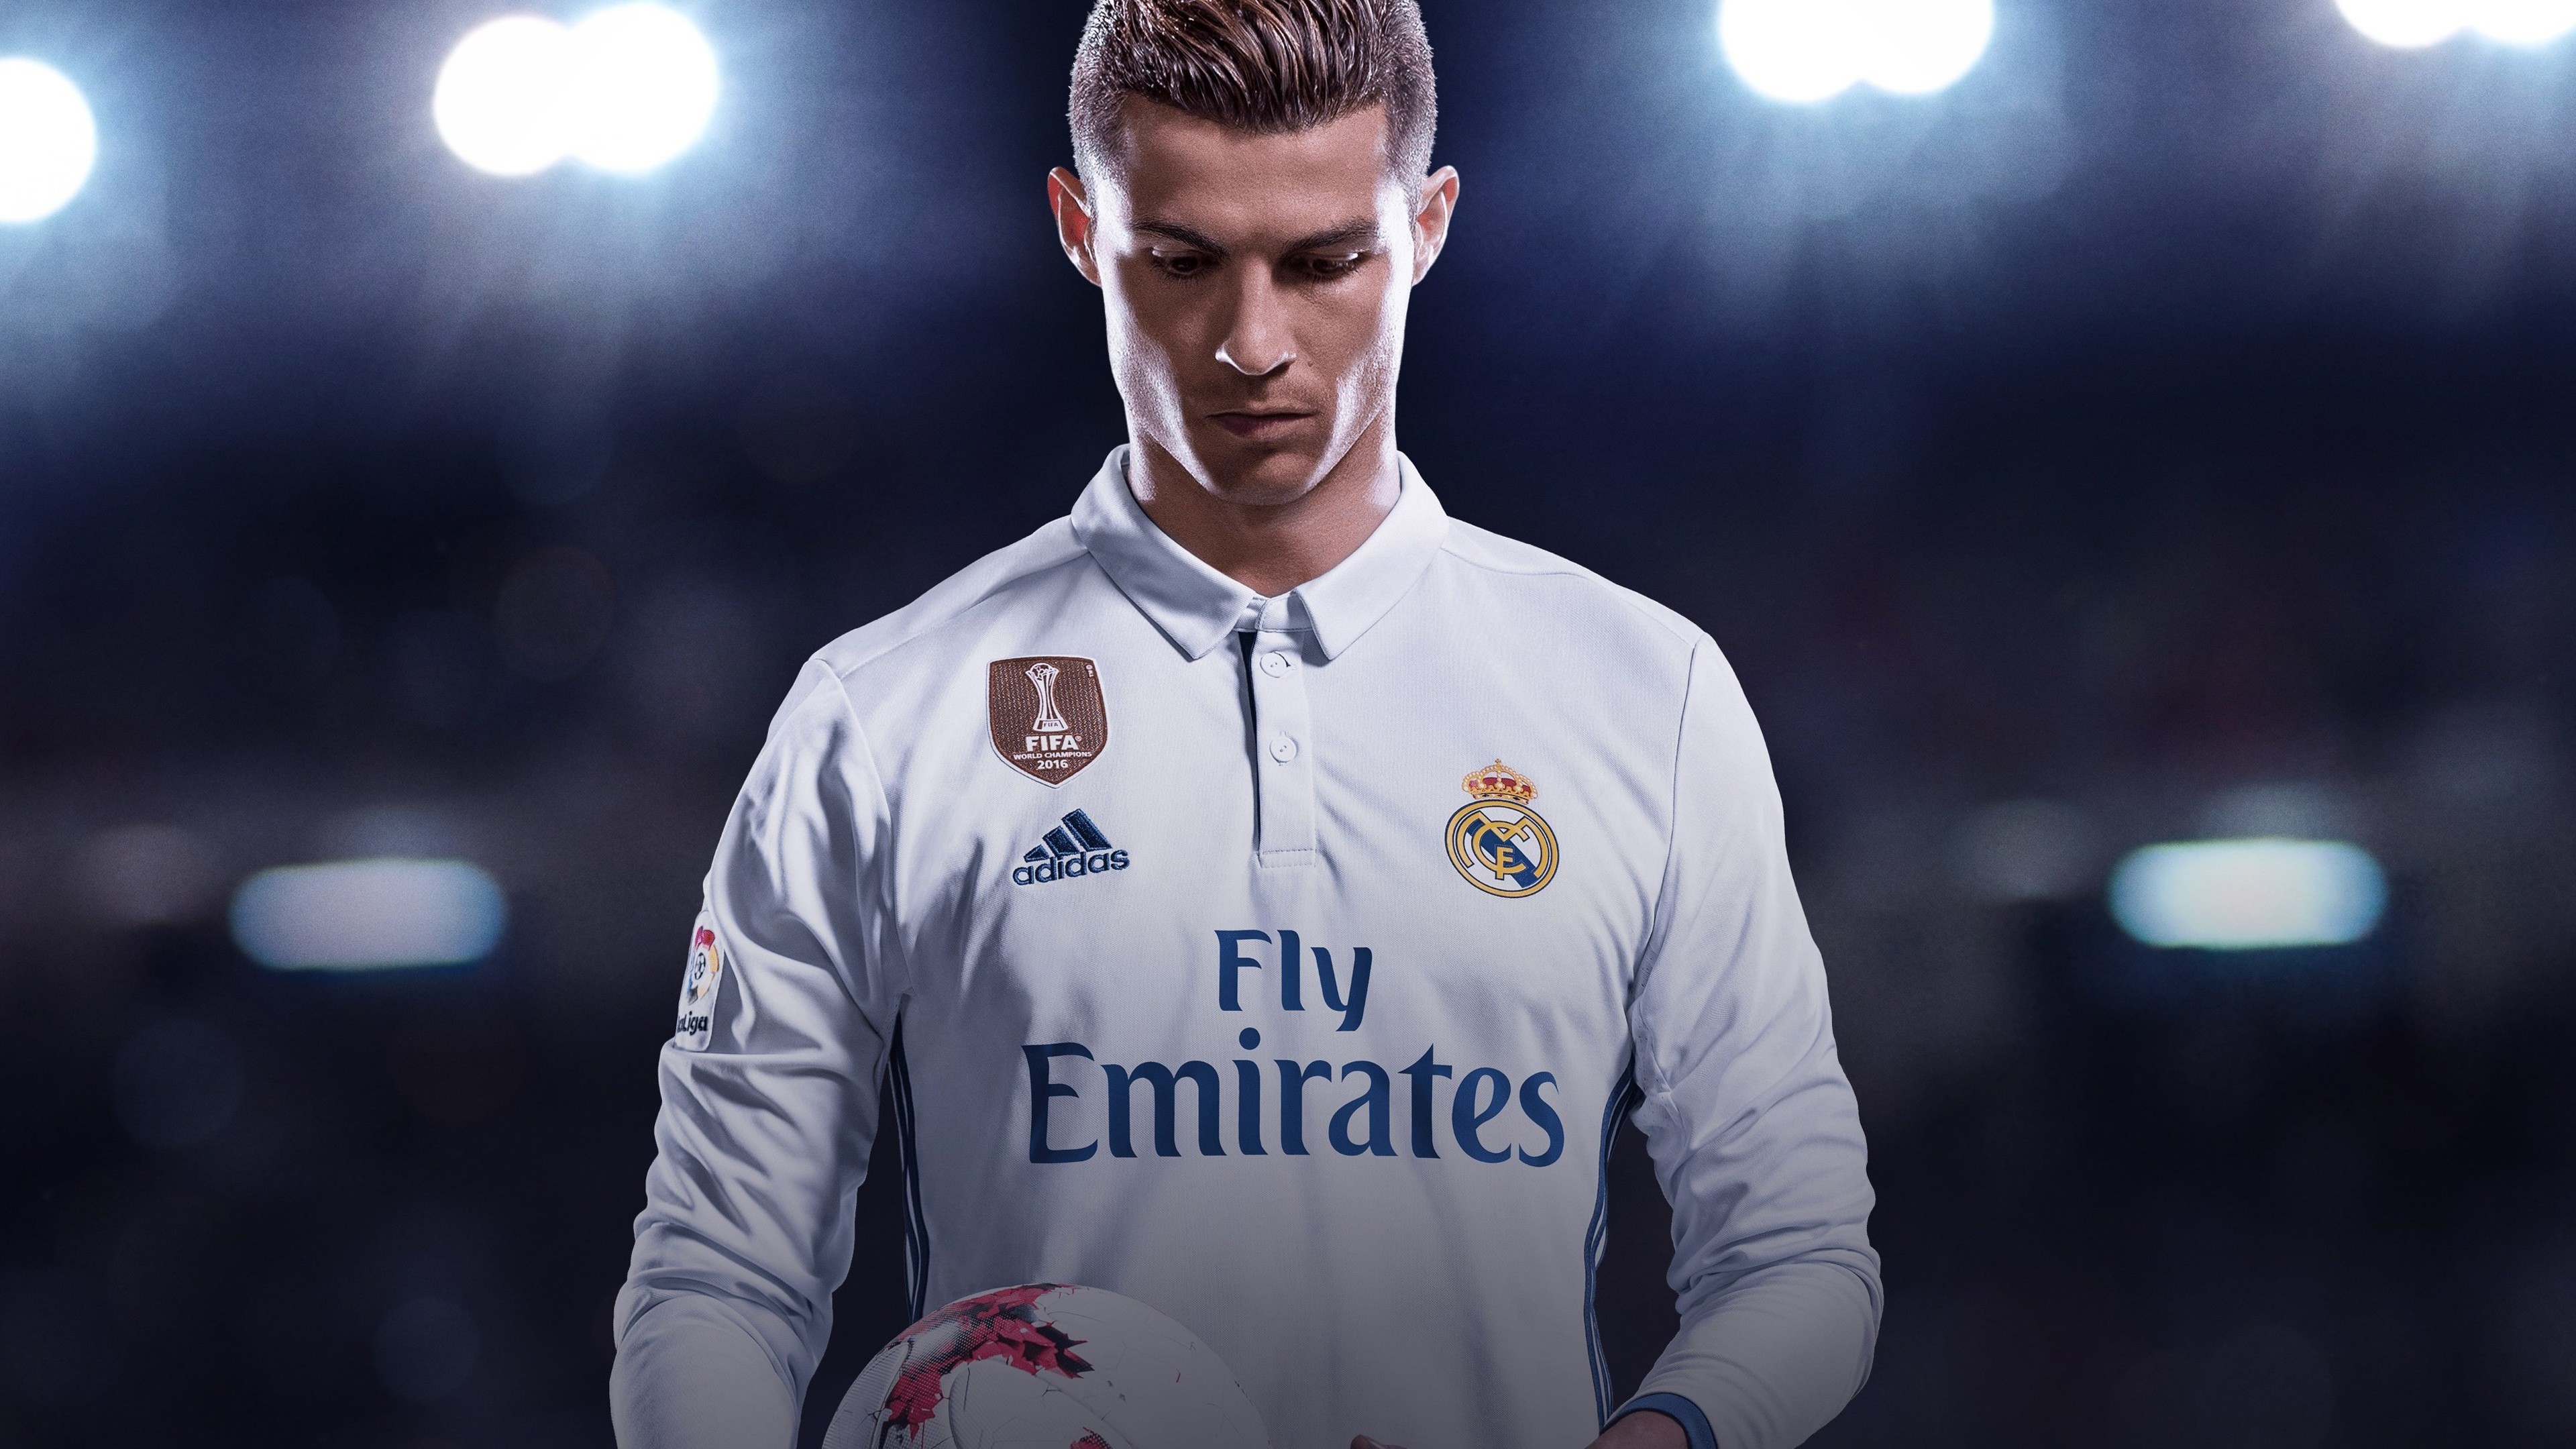 Dành cho những người yêu thích Cristiano Ronaldo, chúng tôi có một bộ sưu tập các hình nền HD đẹp mắt và sáng tạo để bạn có thể tạo nên sự khác biệt trên màn hình máy tính của mình. Hãy cùng khám phá những hình ảnh tuyệt đẹp này và truyền cảm hứng từ Ronaldo.